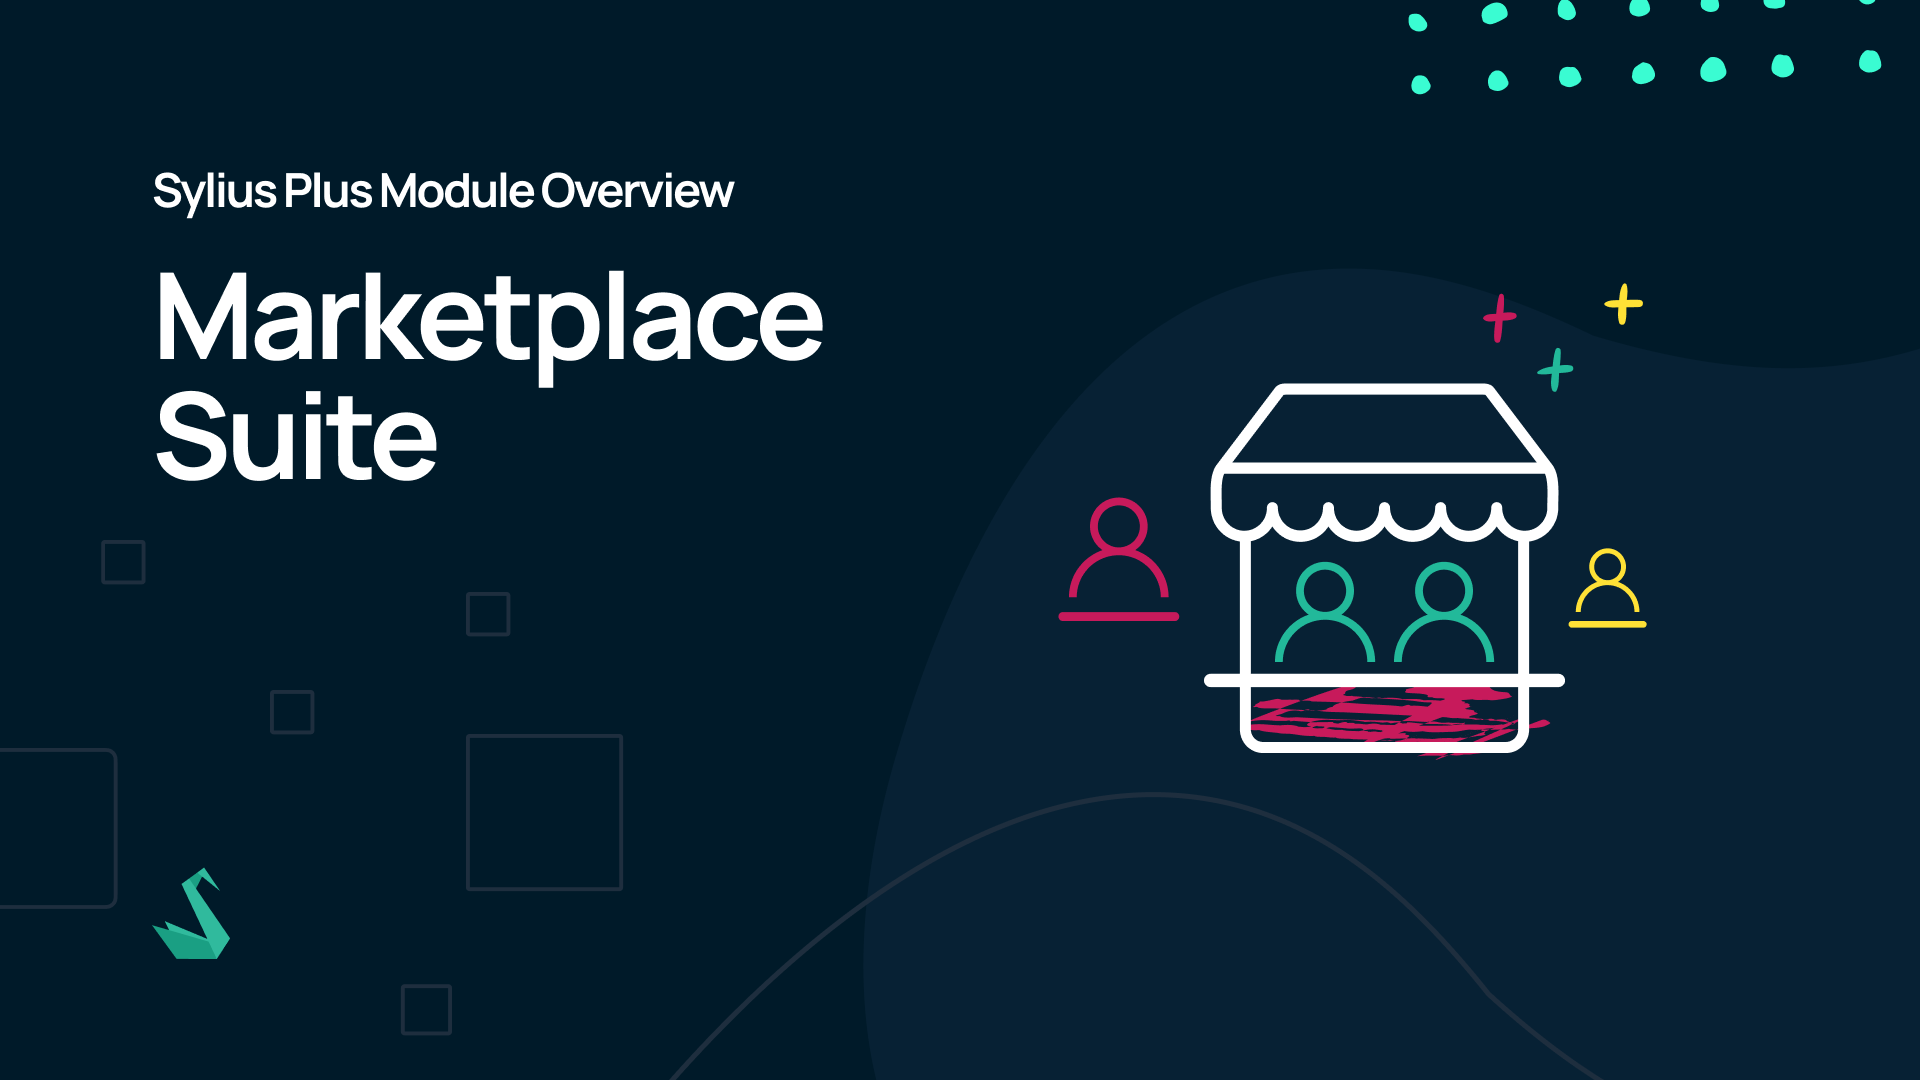 Sylius Plus Module Overview: Marketplace Suite